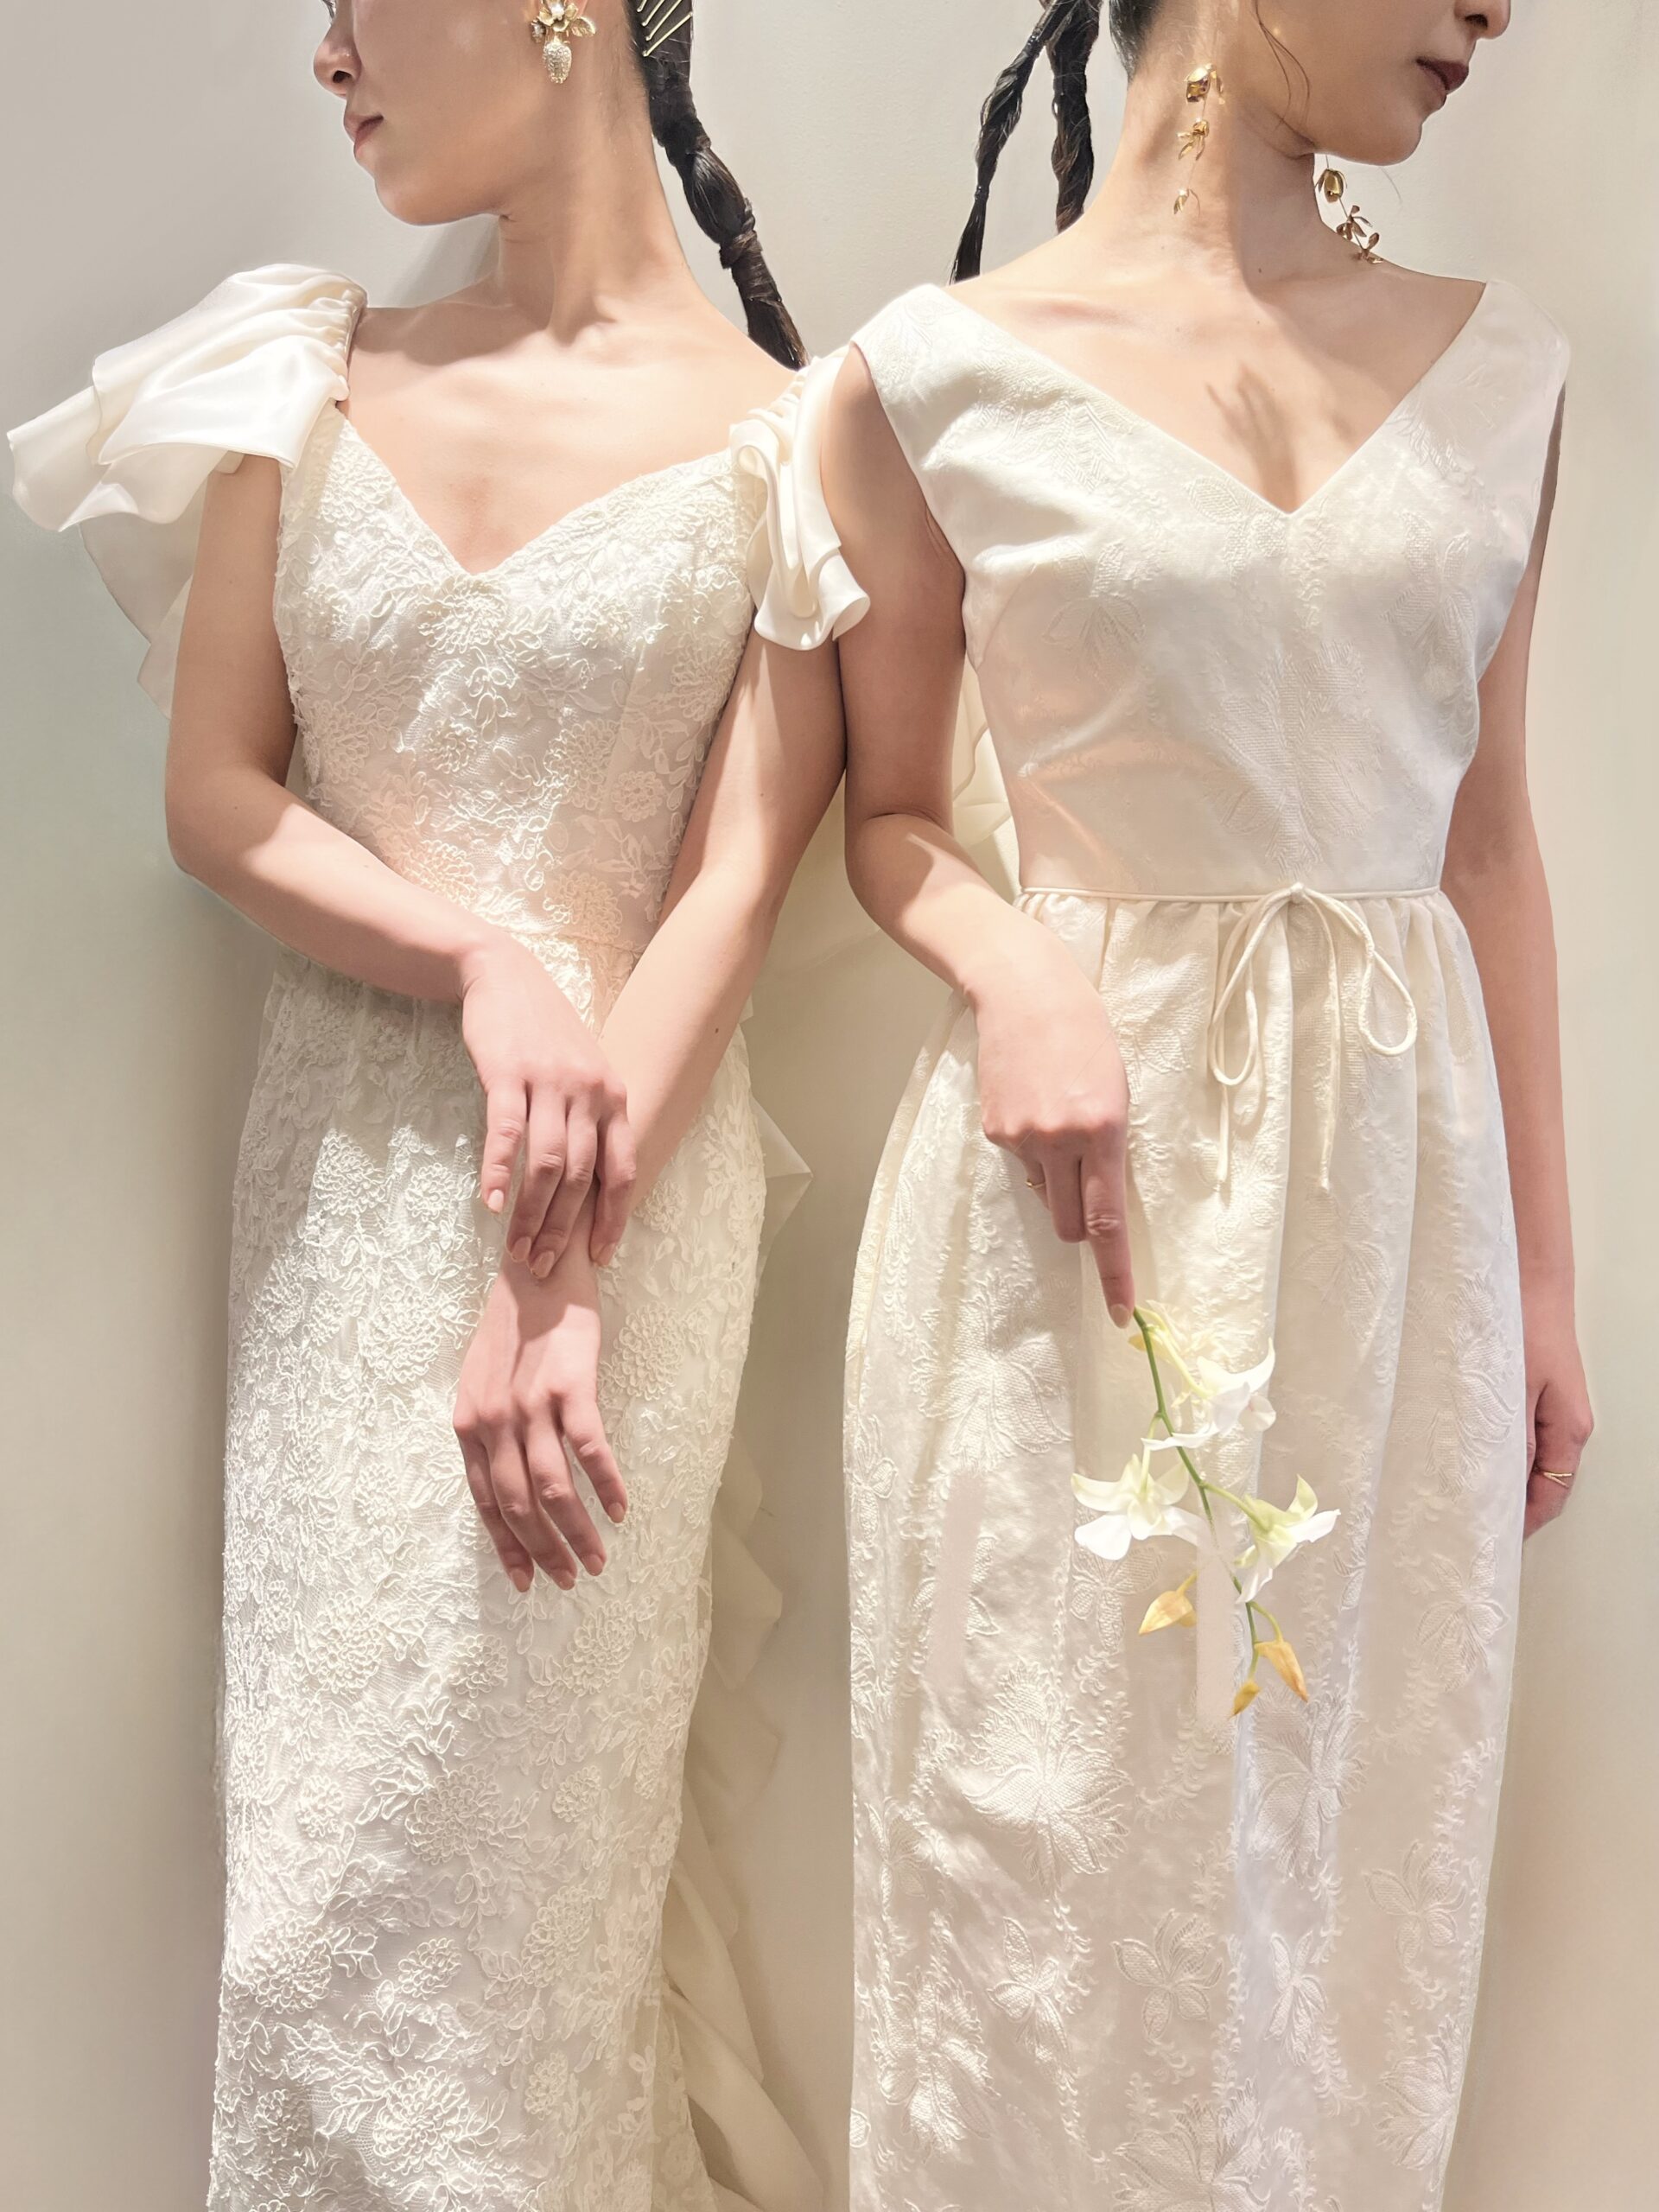 トリートドレッシング神戸店で神戸エリアのおしゃれな花嫁におすすめしたい日本初上陸のマルカリアンの新作のウェディングドレスは人とかぶりたくないコーディネートを楽しんでいただけます